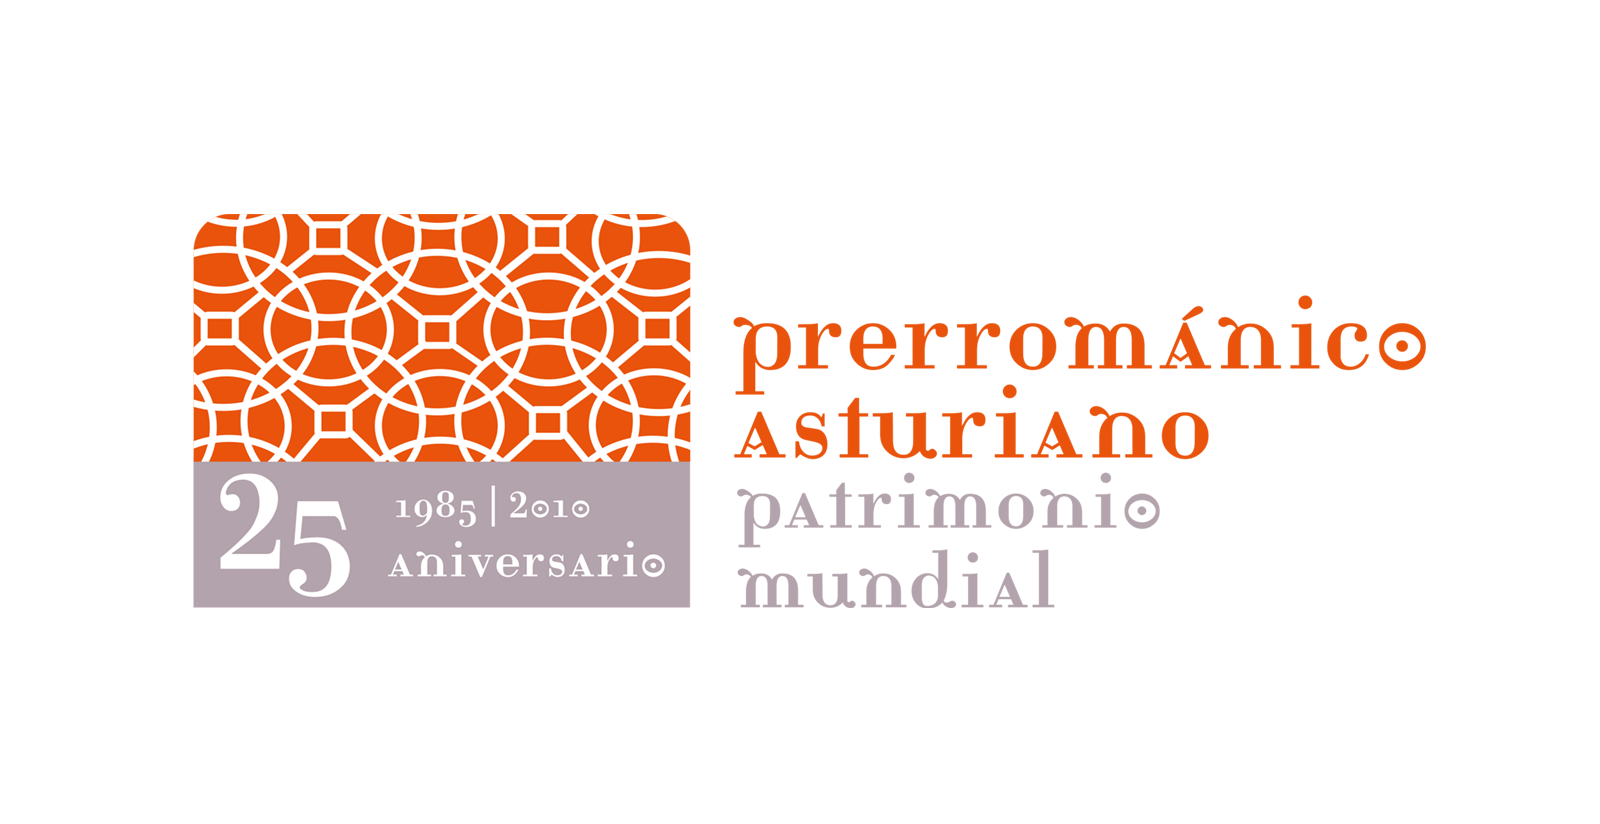 Logotipo Aniversario Prerromanico Asturiano